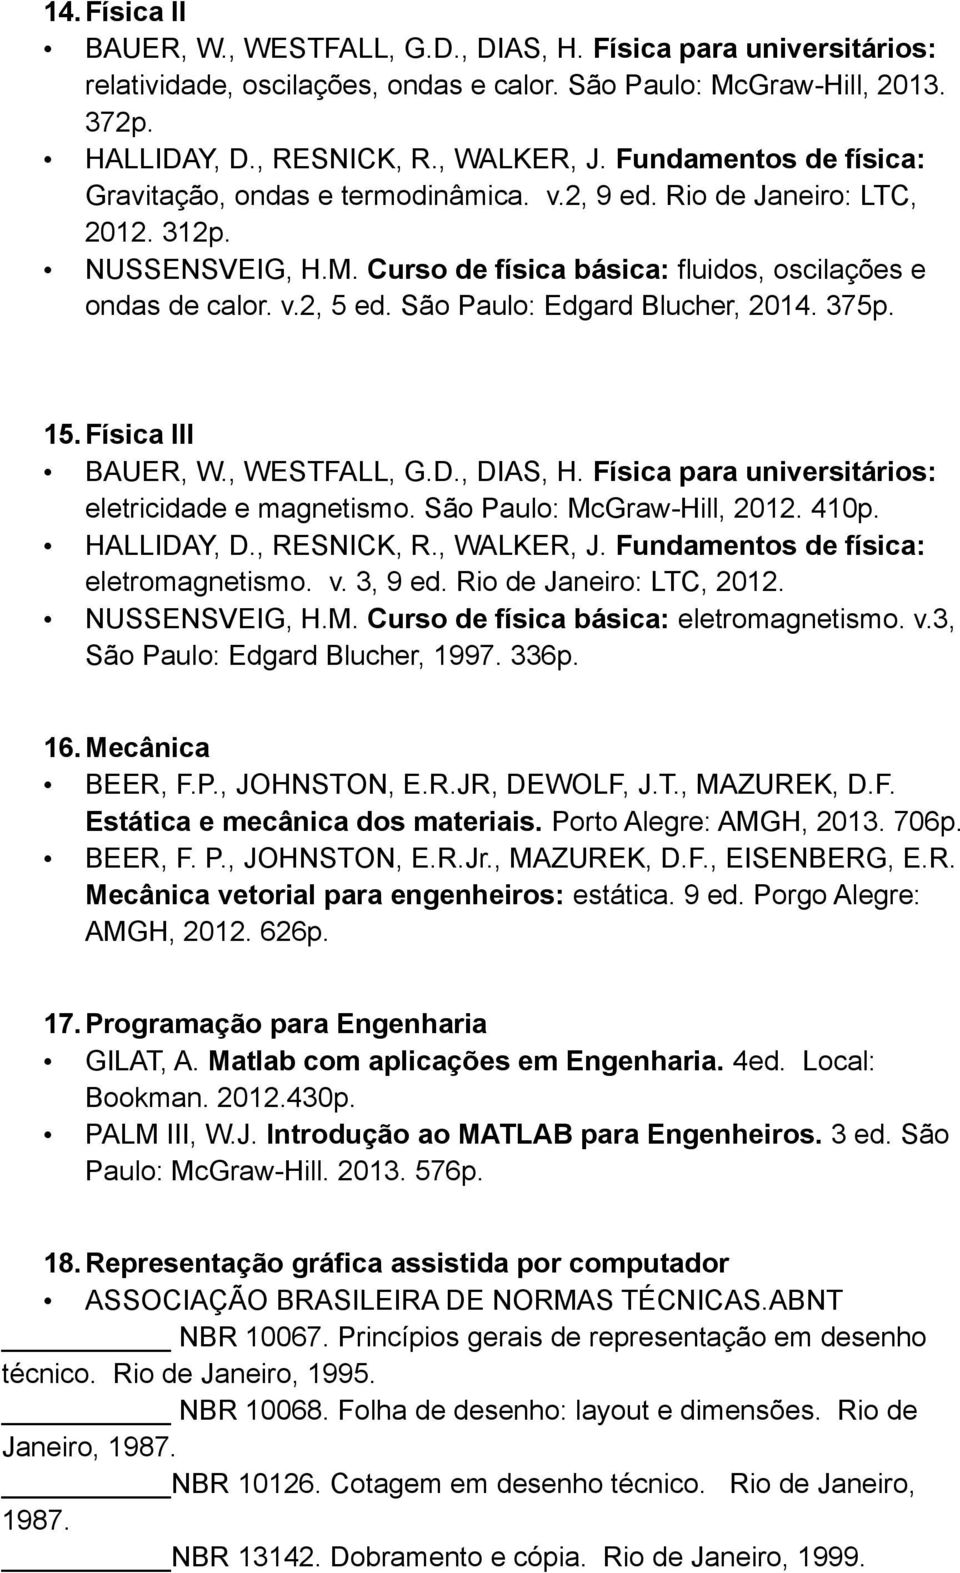 M. Curso de física básica: eletromagnetismo. v.3, São Paulo: Edgard Blucher, 1997. 336p. 16. Mecânica BEER, F.P., JOHNSTON, E.R.JR, DEWOLF, J.T., MAZUREK, D.F. Estática e mecânica dos materiais.